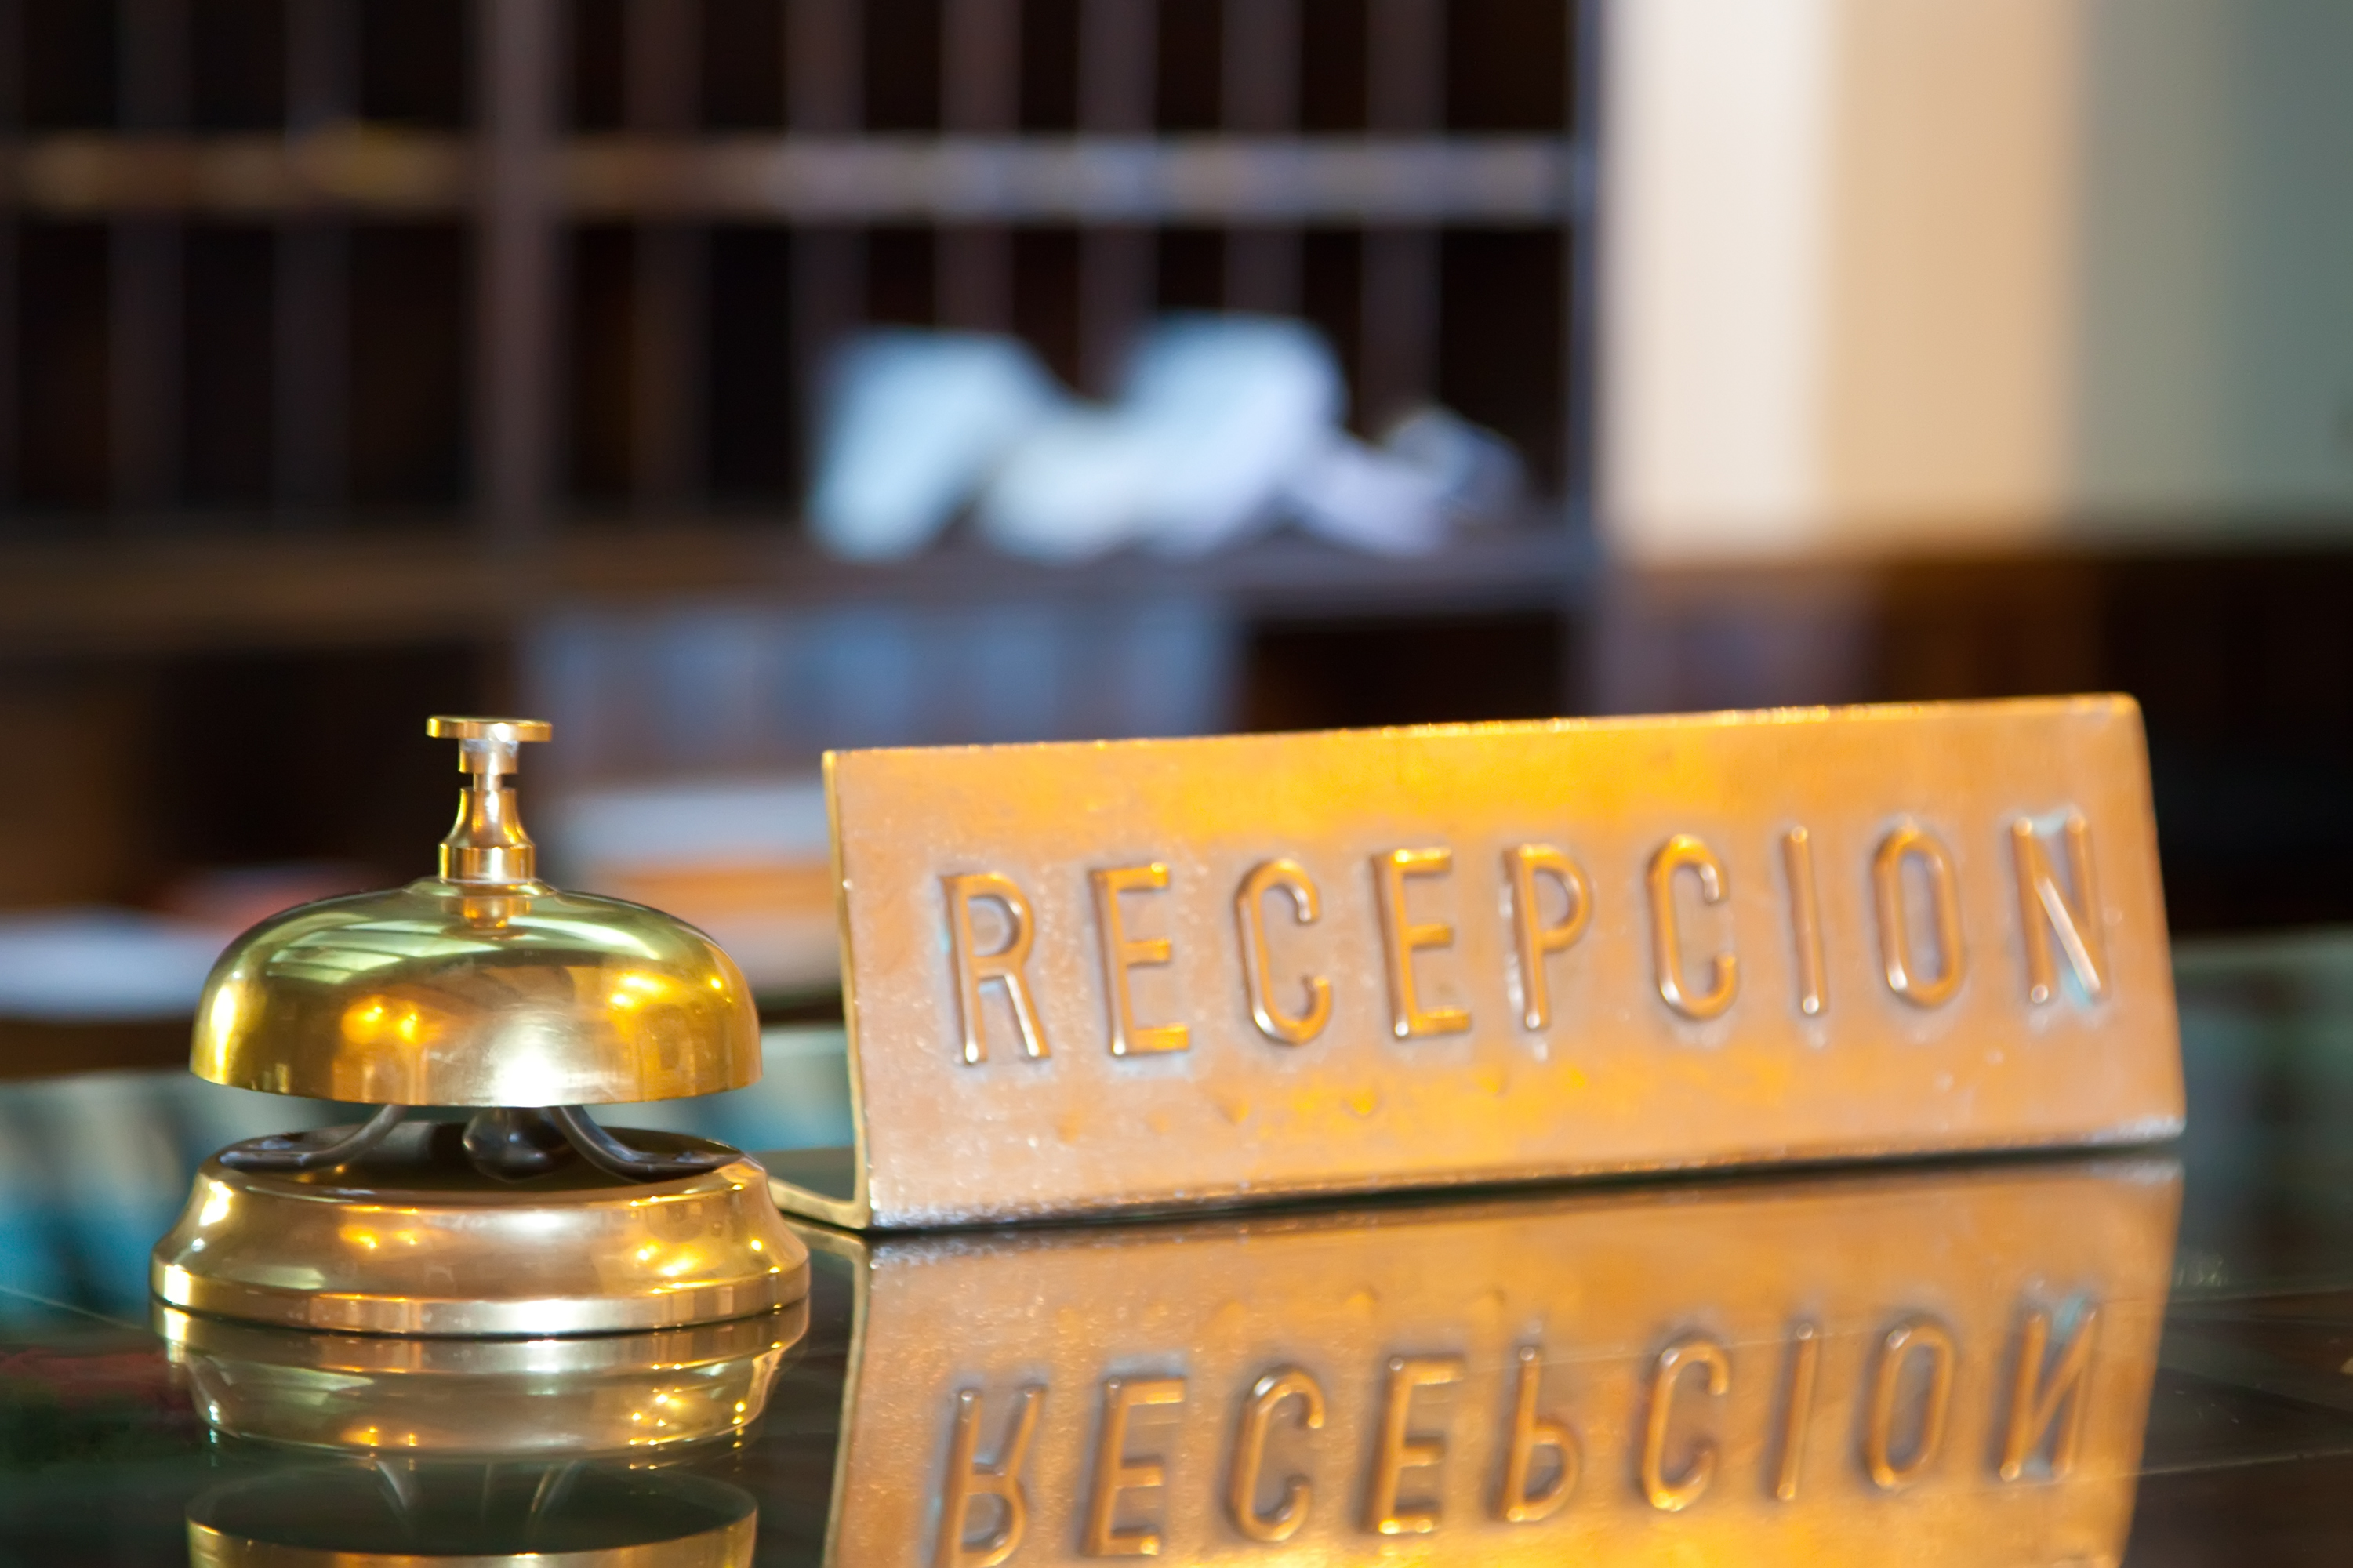 Bell on reception desk in motel. | Source: Shutterstock